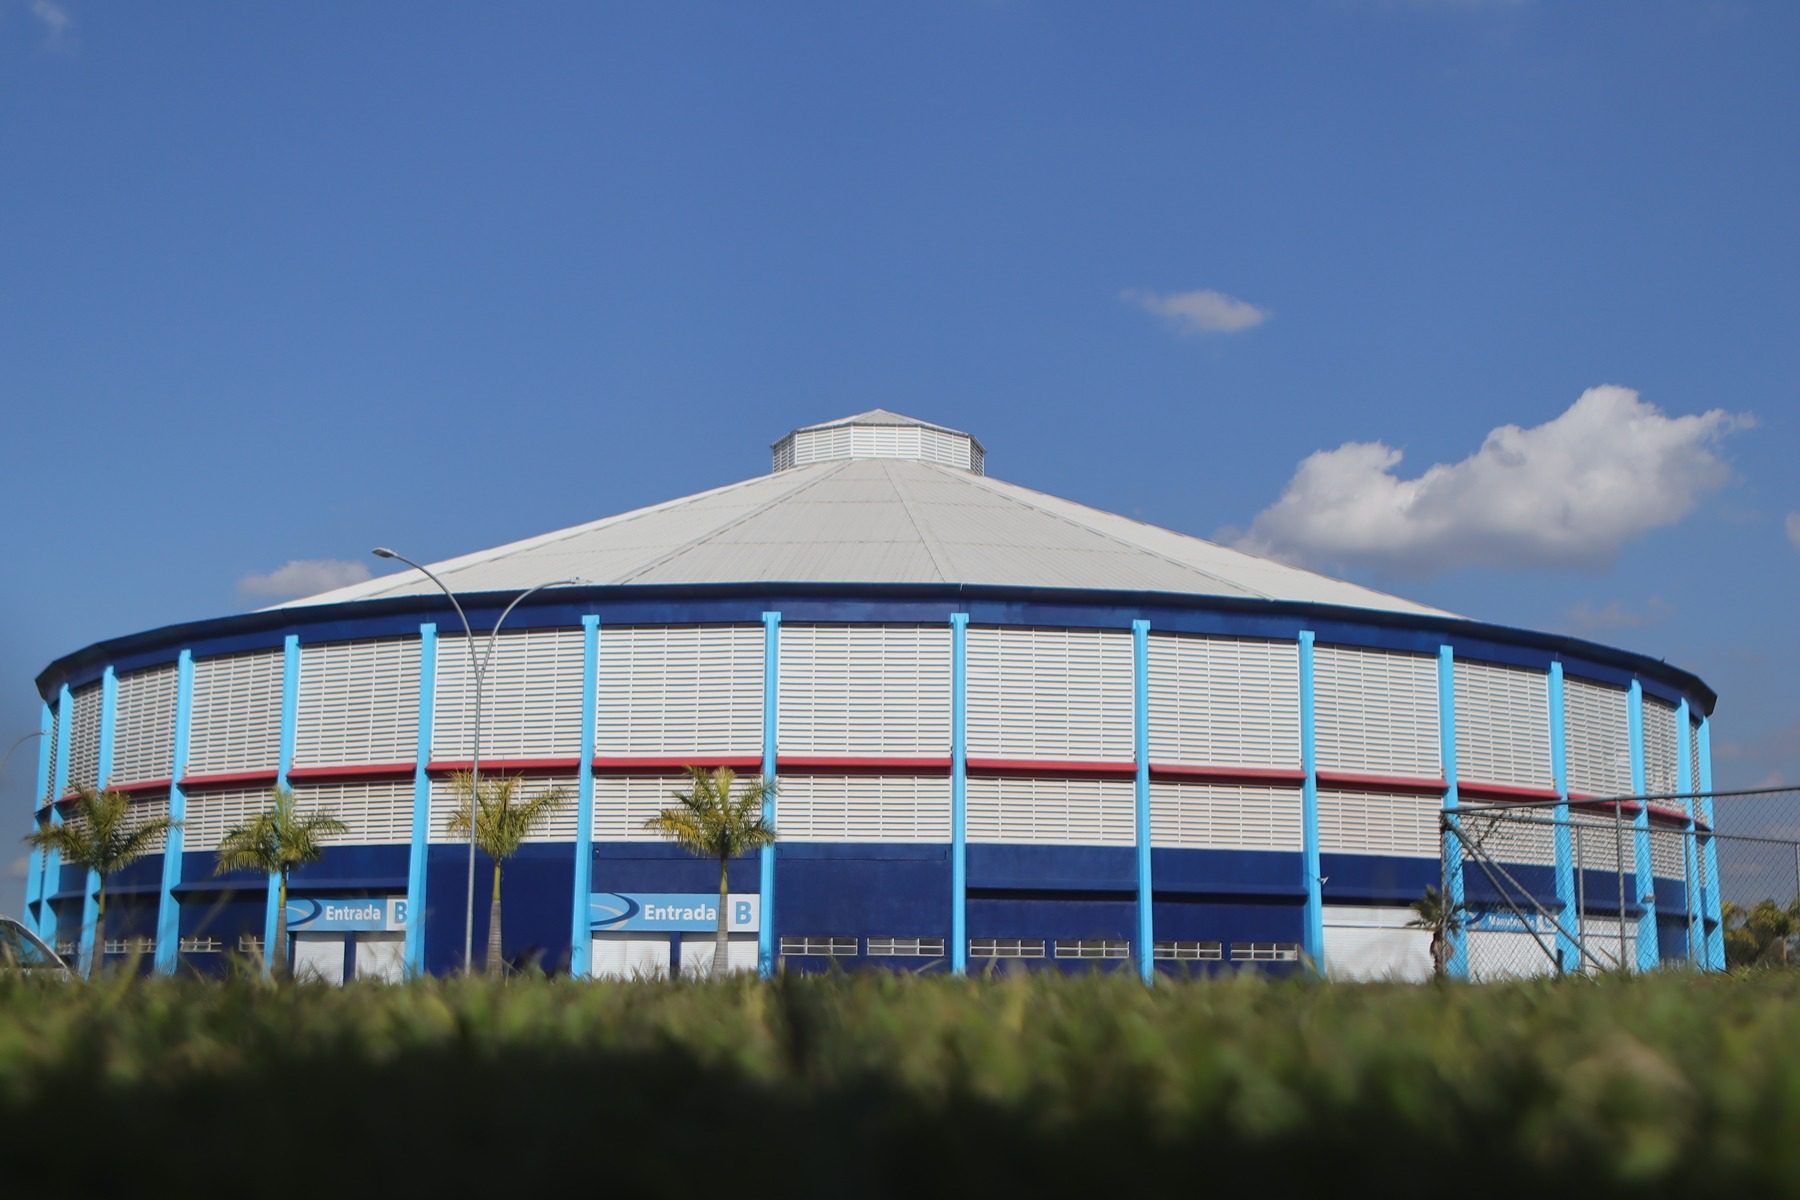 Arena Suzano